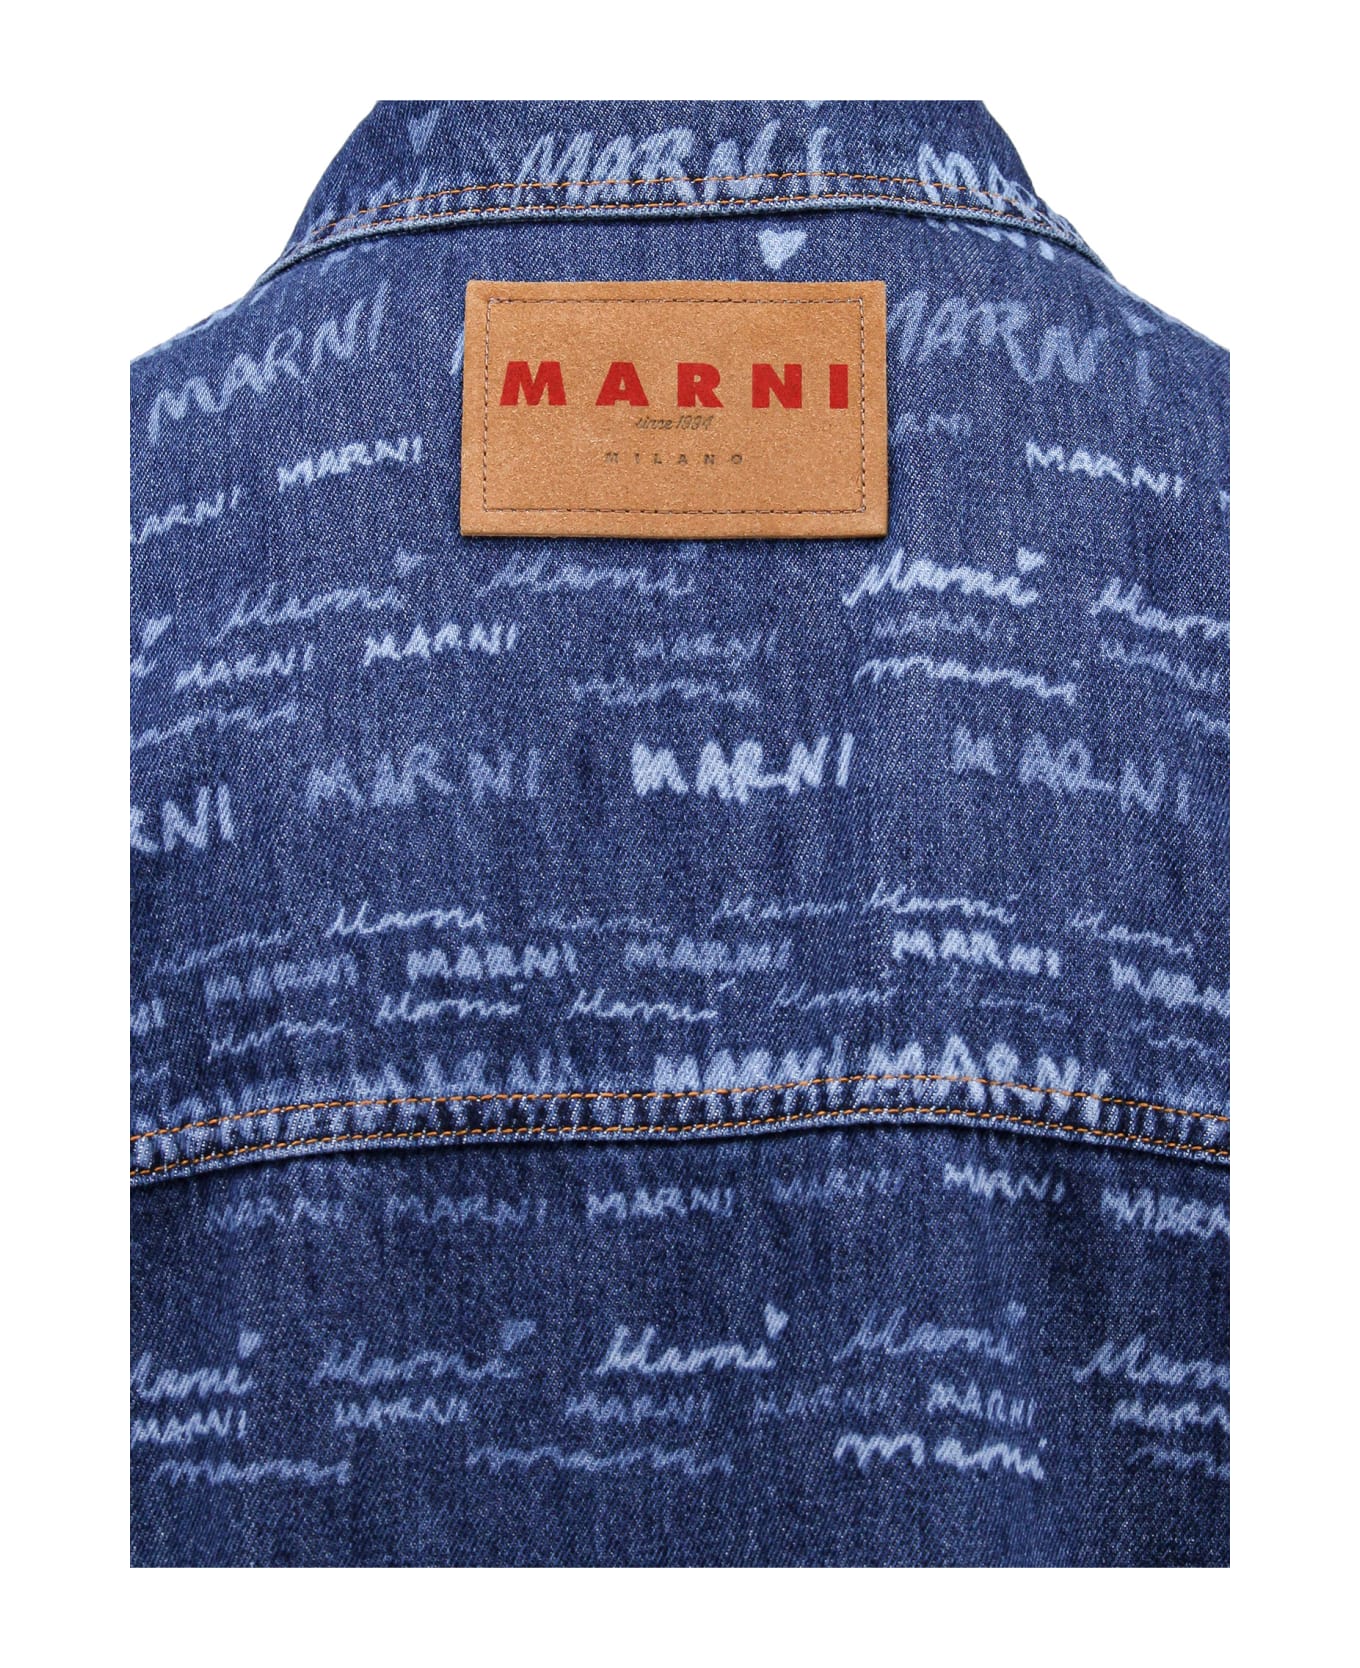 Marni Jacket - Blue